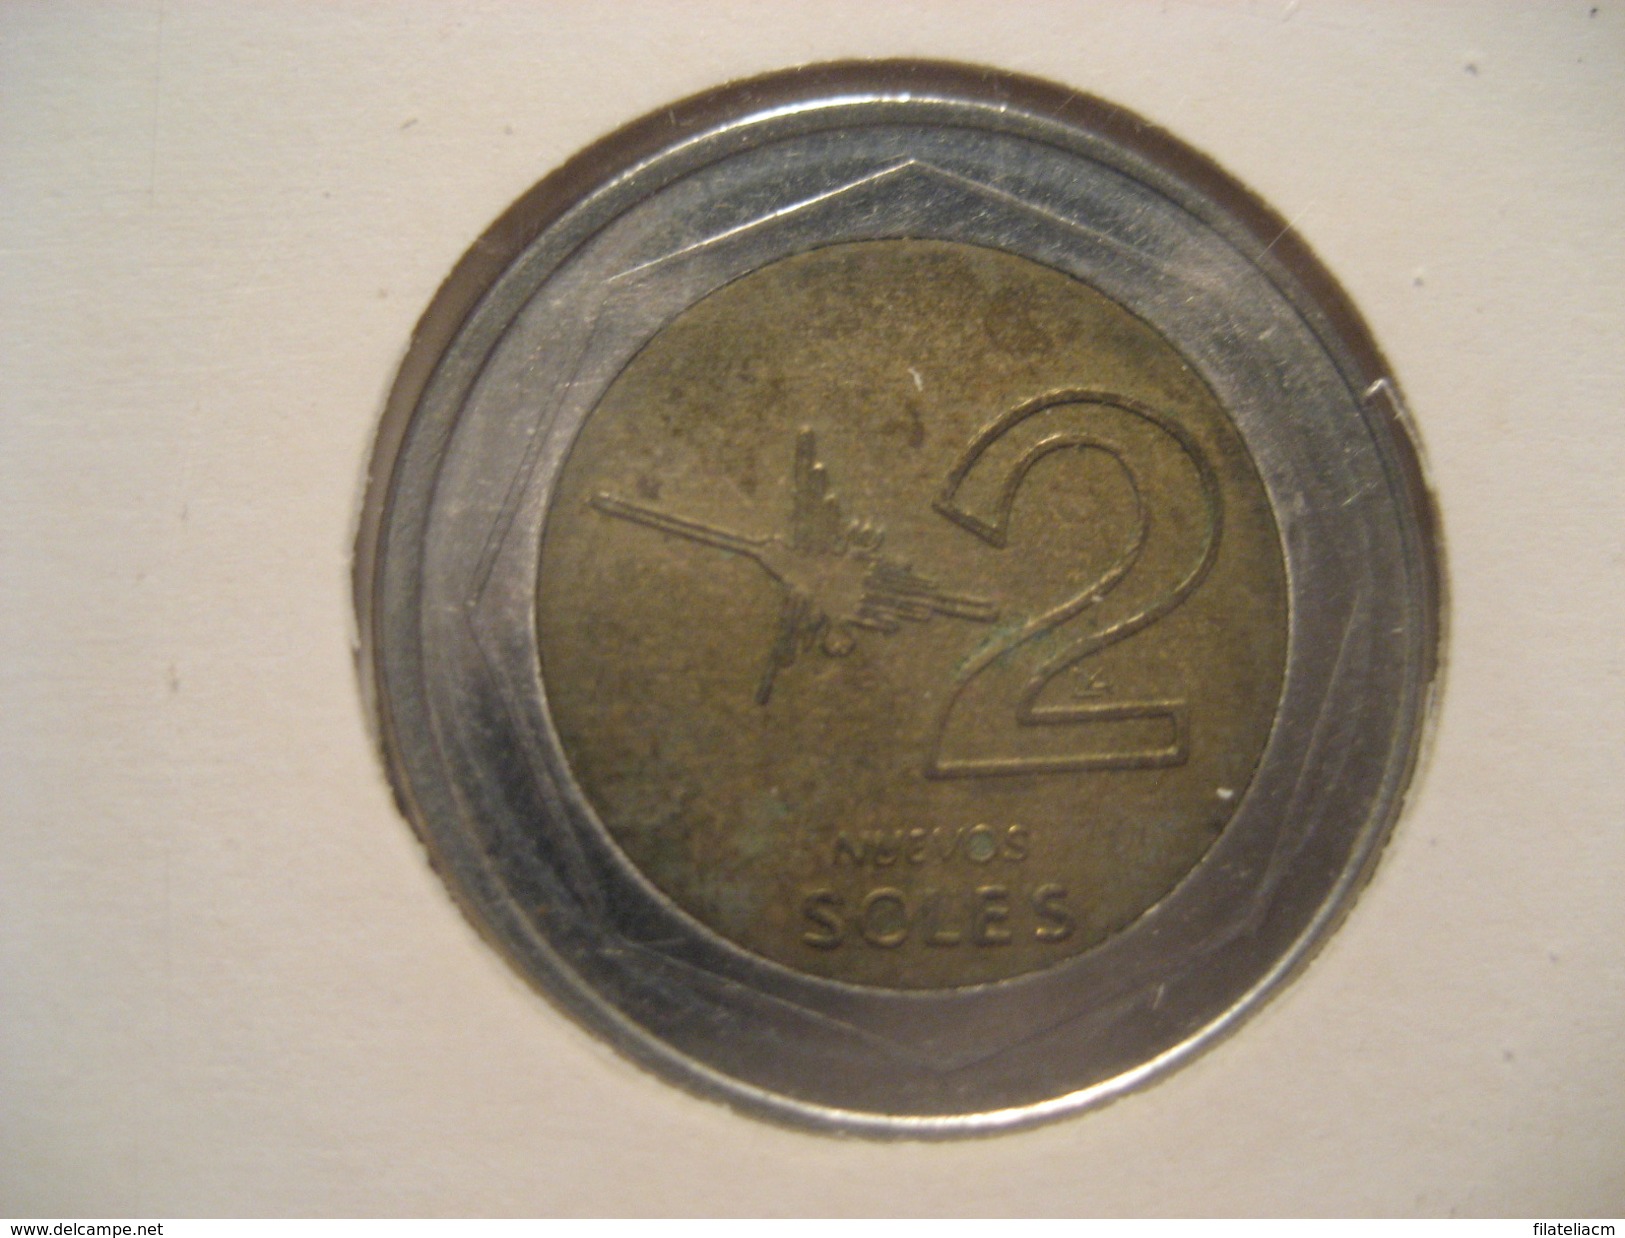 2 Nuevos Soles 2007 Bimetallic PERU Coin - Peru